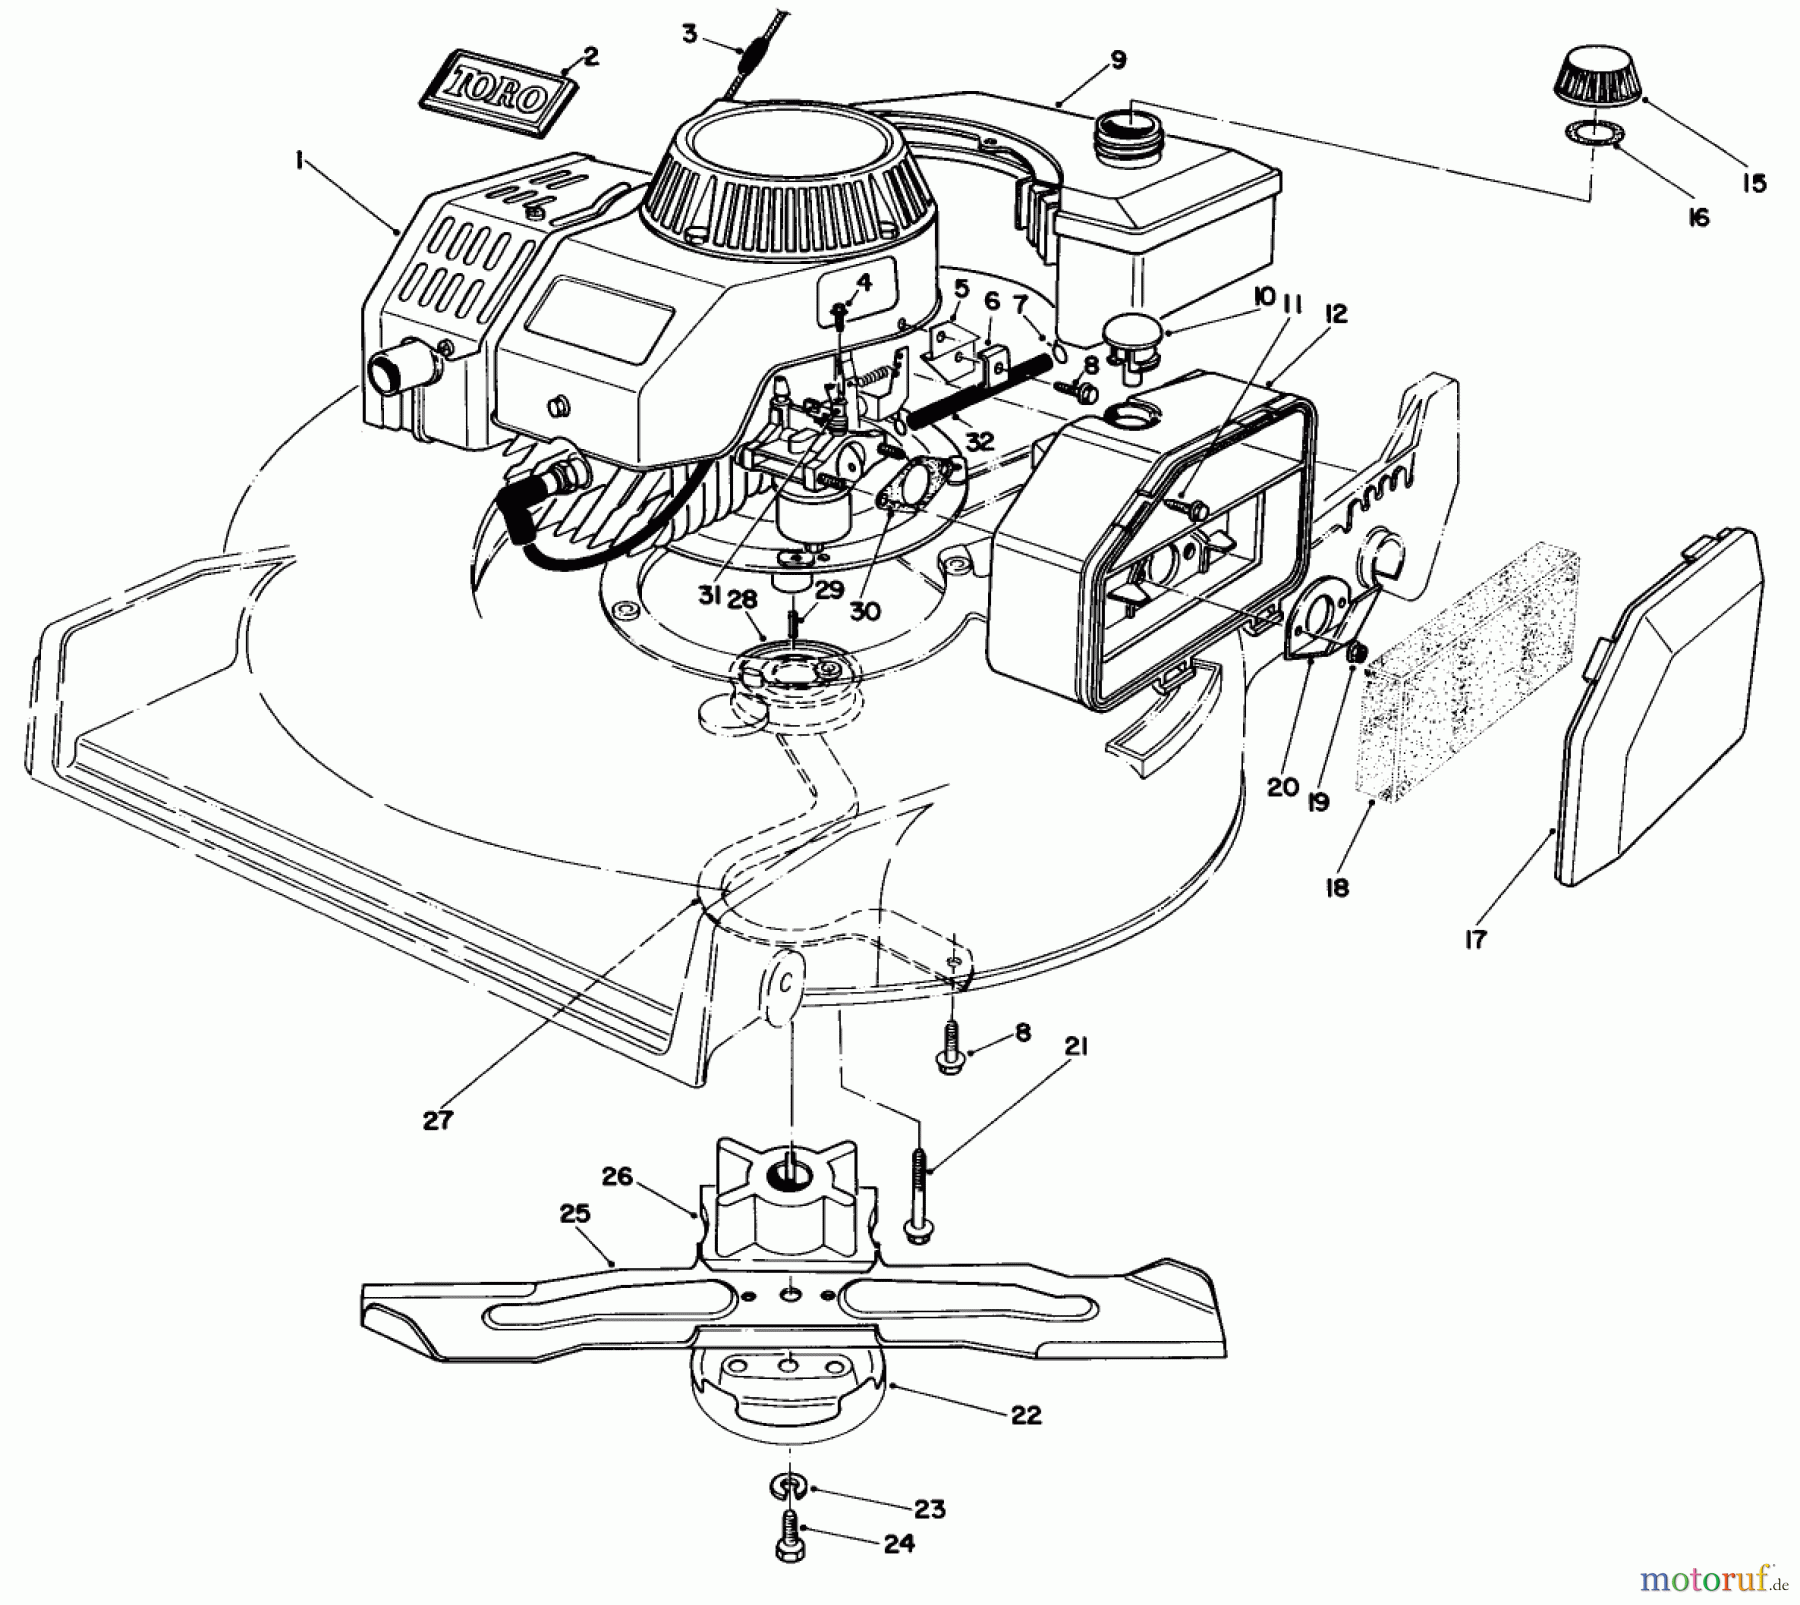  Toro Neu Mowers, Walk-Behind Seite 1 20680 - Toro Lawnmower, 1983 (3000001-3999999) ENGINE ASSEMBLY